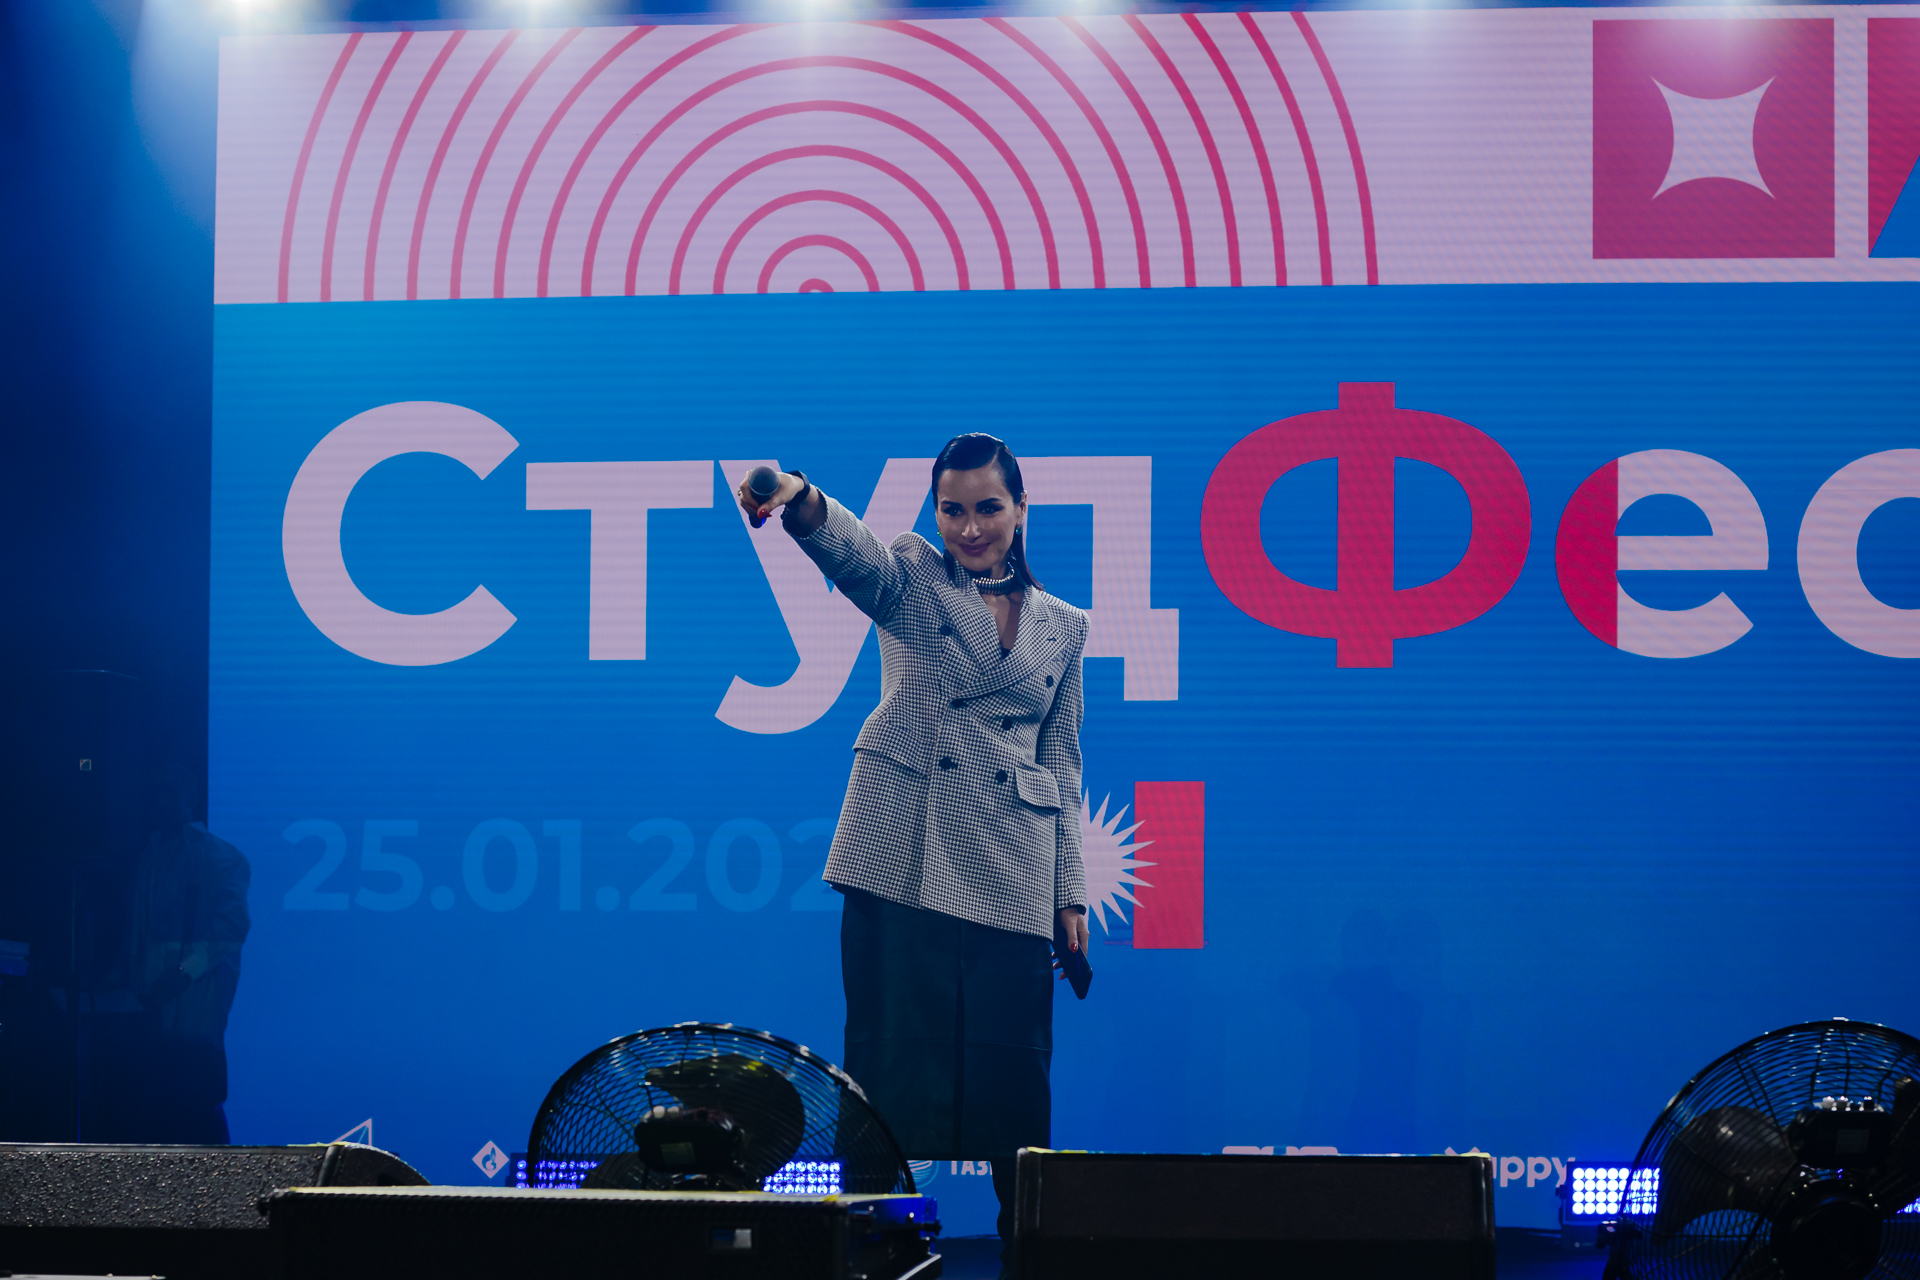 фото: Более 11 тысяч человек посетили СтудФест в Санкт-Петербурге